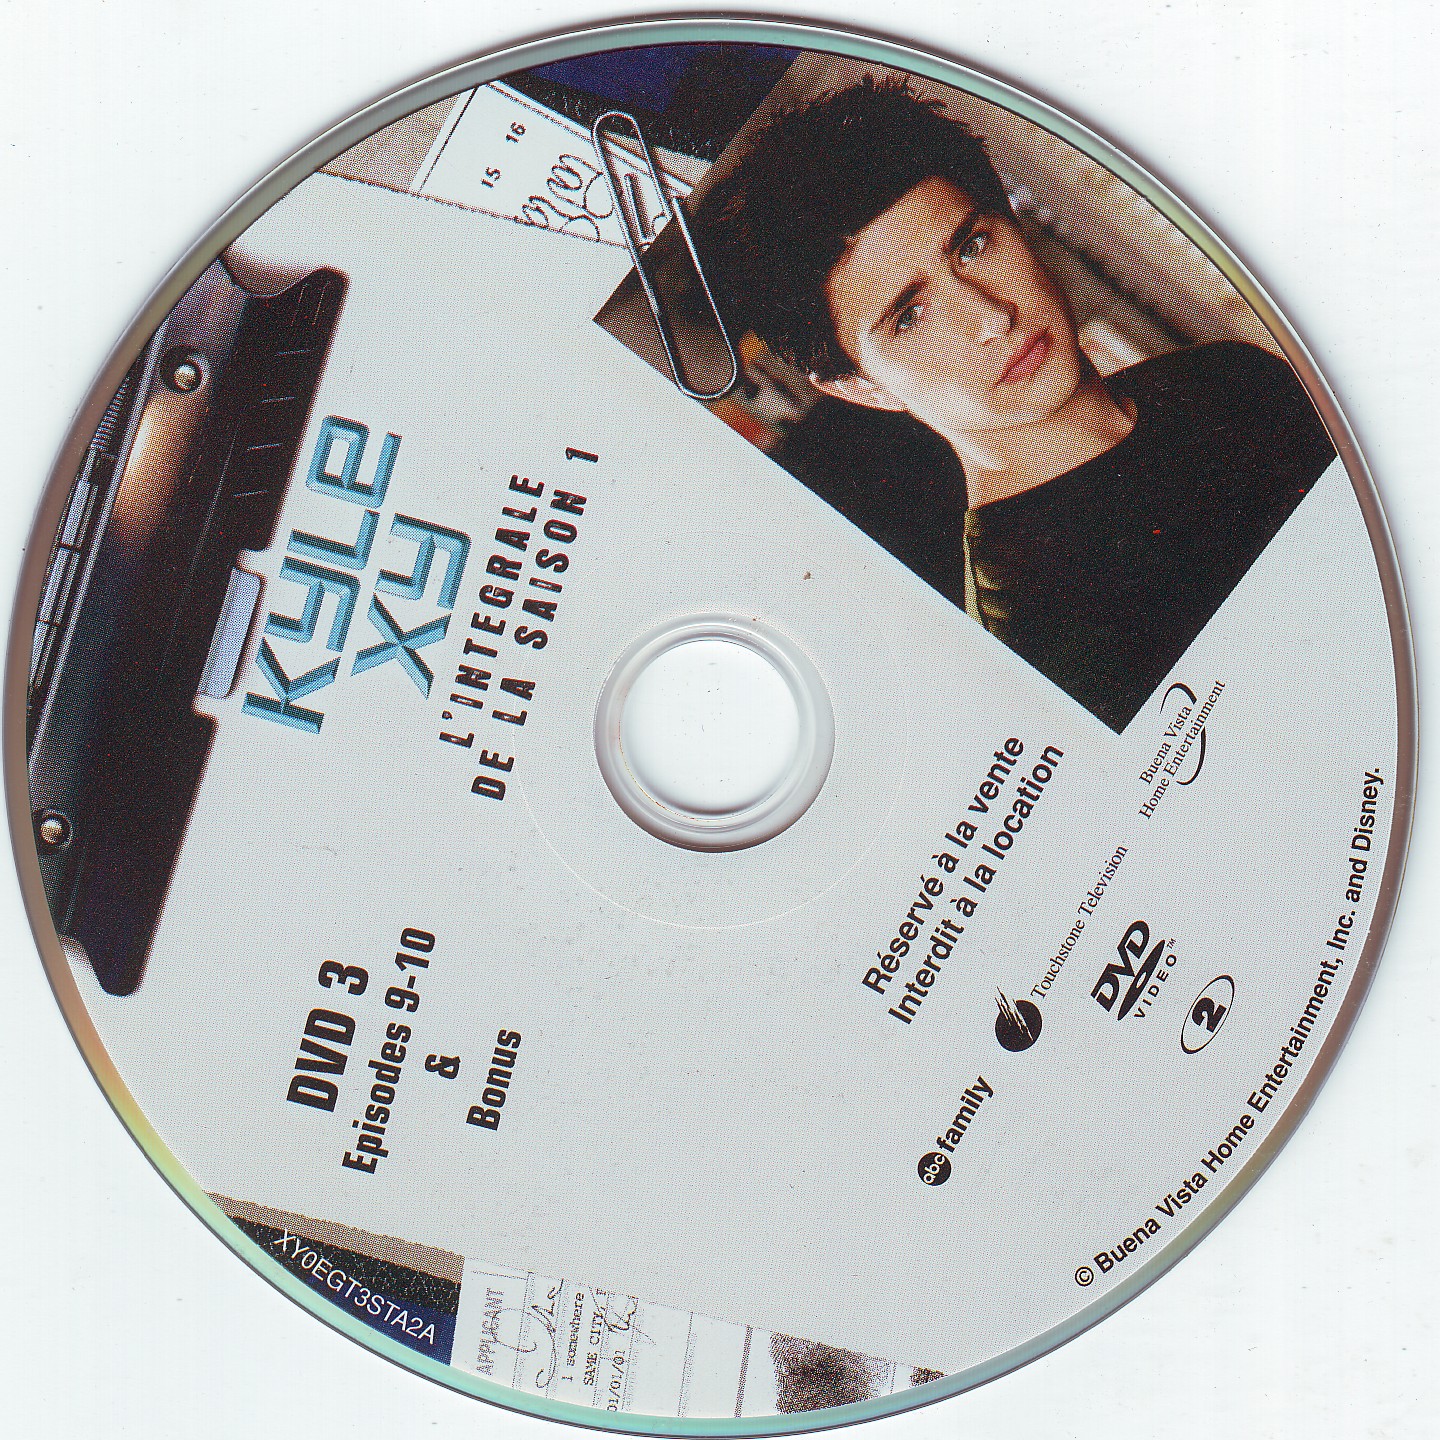 Kyle XY saison 1 DISC 3